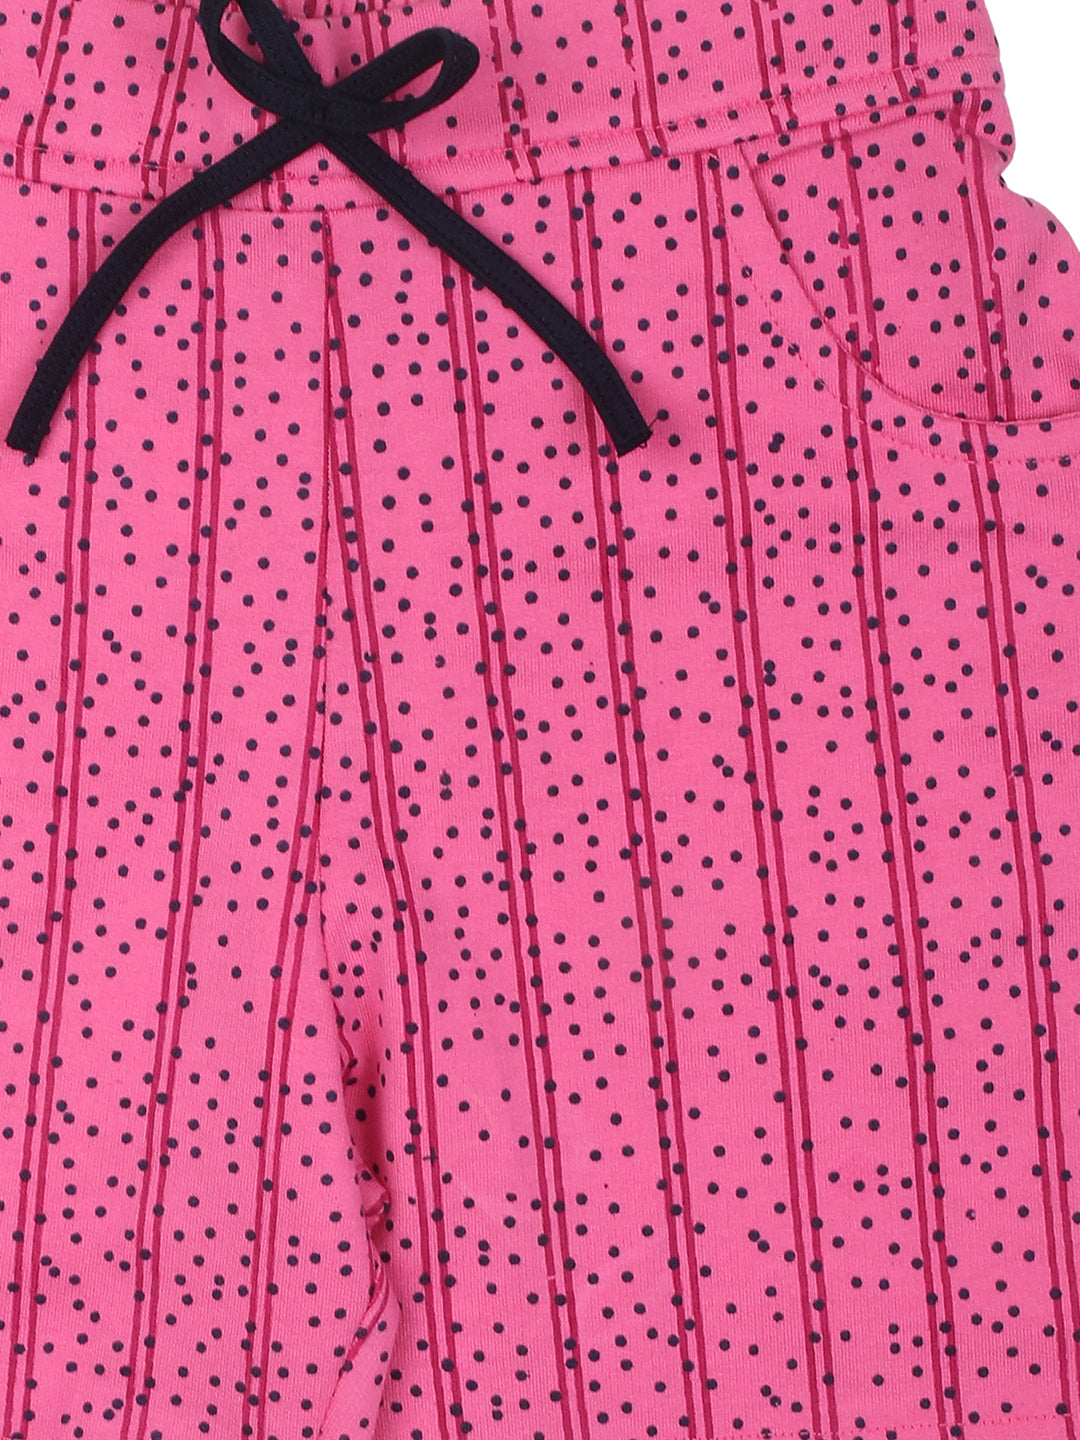 Nins Moda Girls Dot Printed Shorts-Pink